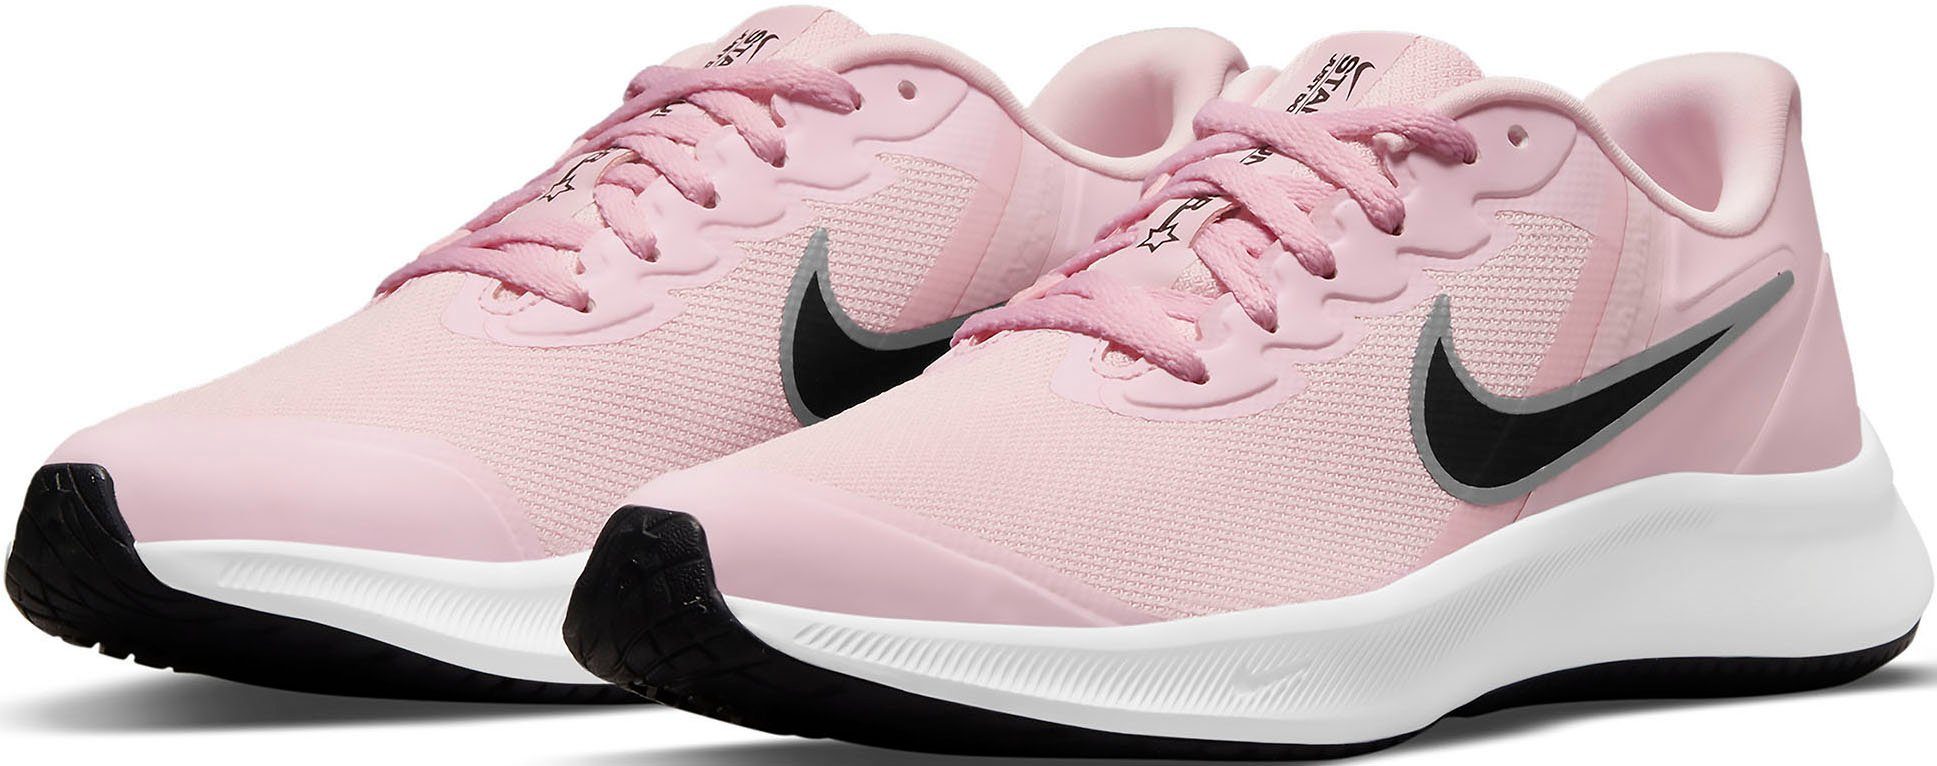 RUNNER Laufschuh 3 pink STAR Nike (GS)